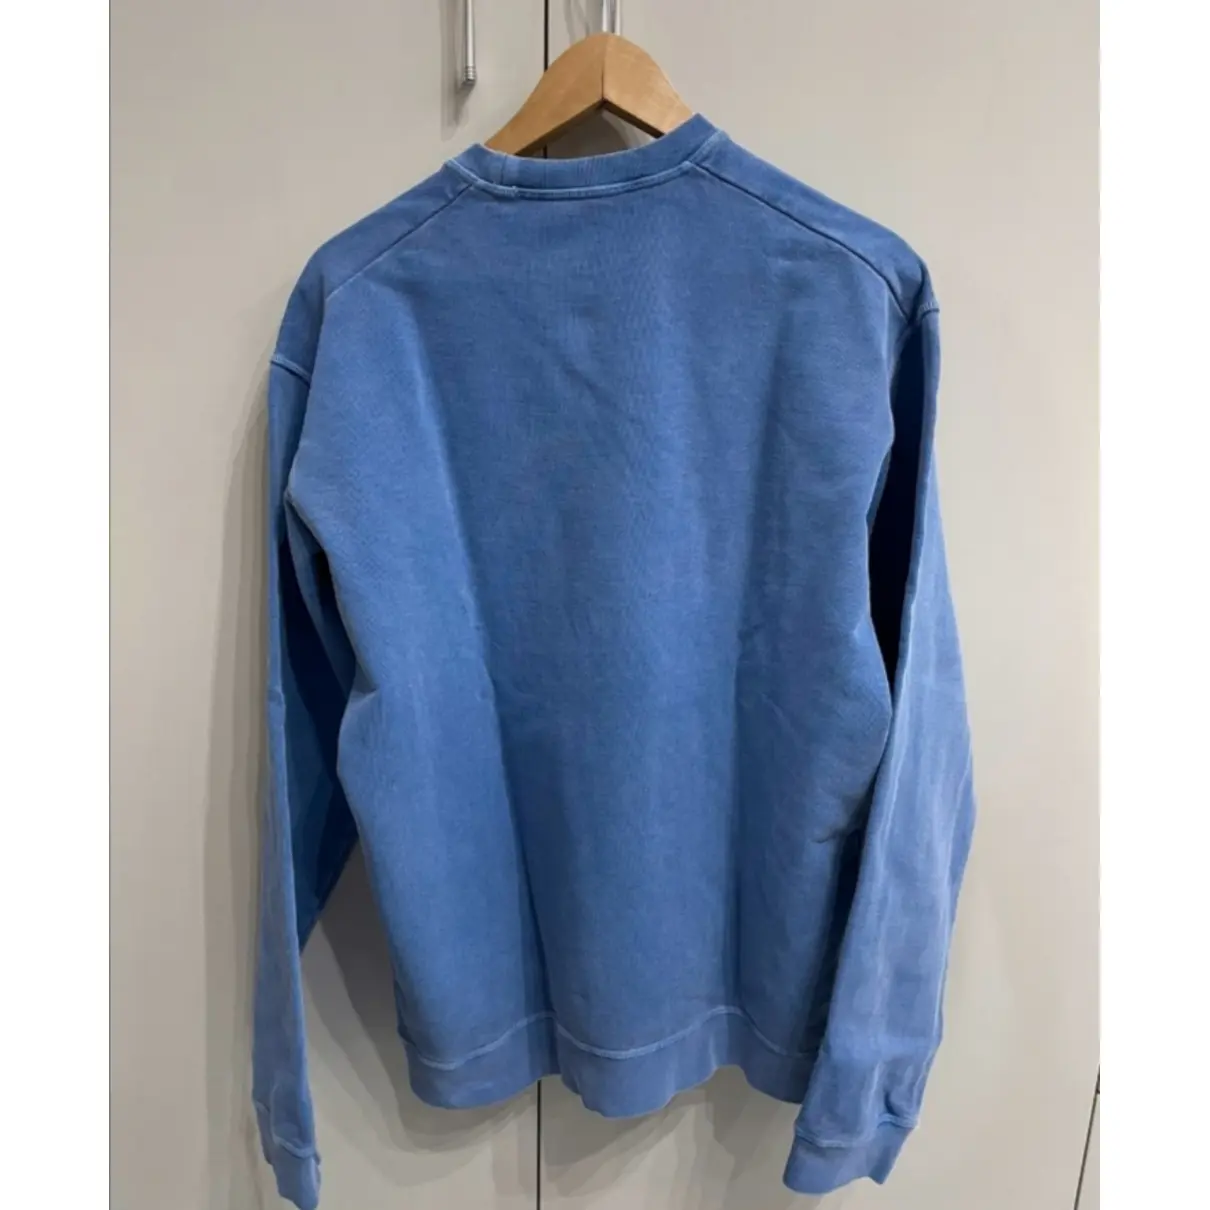 Buy Dsquared2 Blue Cotton Knitwear & Sweatshirt online